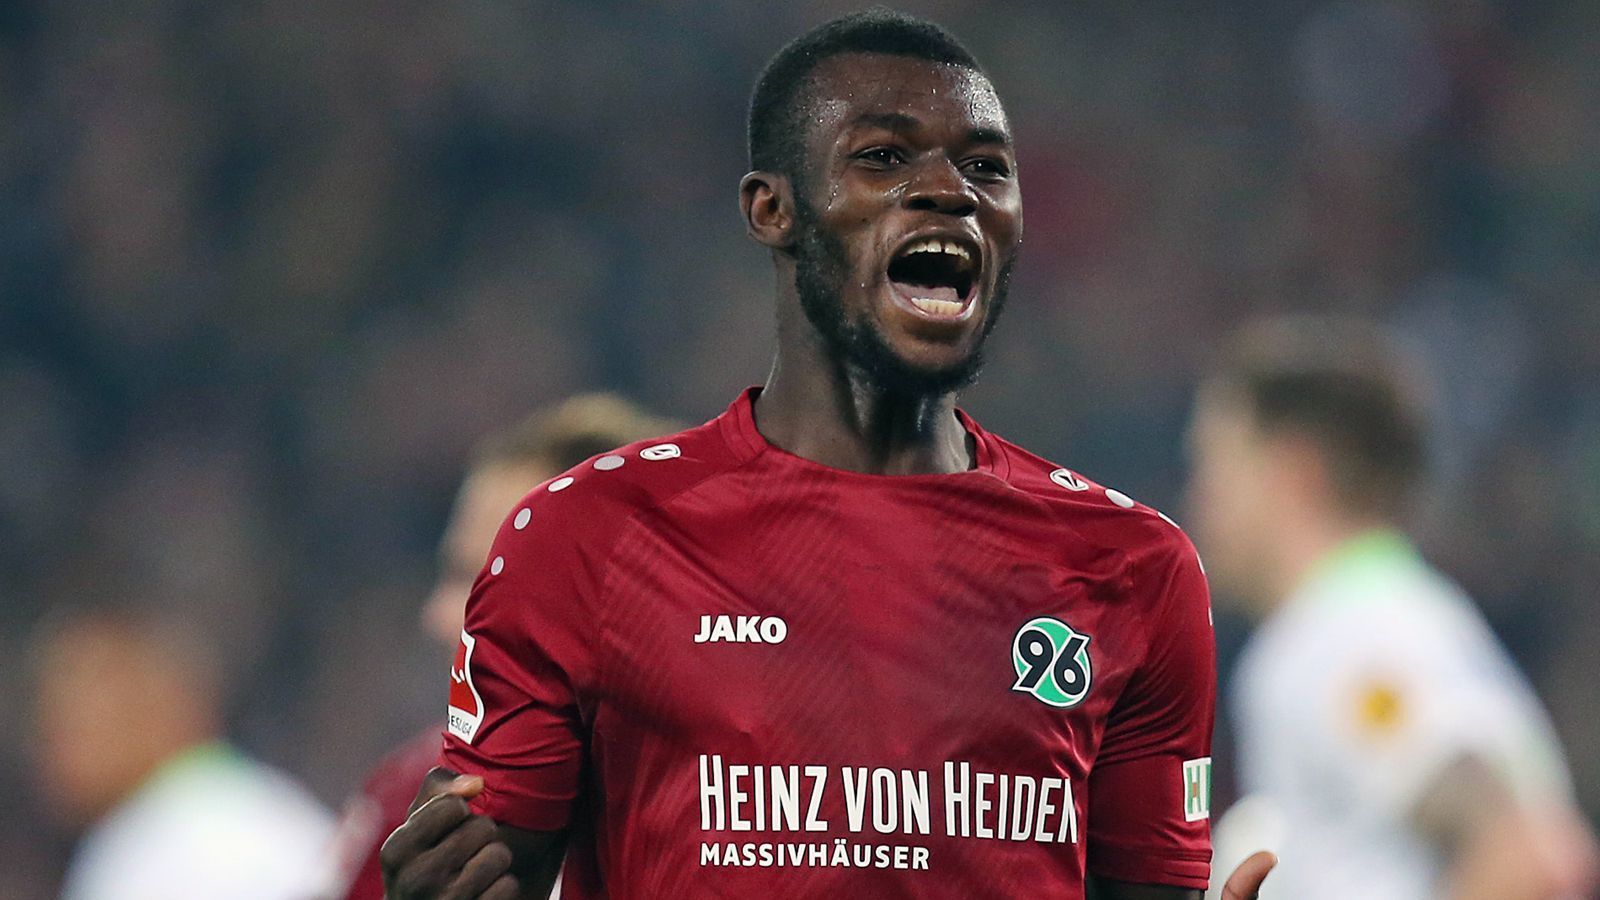 
                <strong>Ihlas Bebou</strong><br>
                Flügelspieler Ihlas Bebou dürfte Hannover 96 möglicherweise auch bald den Rücken kehren. Der 25-Jährige soll über eine Ausstiegsklausel in seinem Vertrag verfügen und wurde zuletzt schon öfter mit einem Wechsel zu Borussia Mönchengladbach in Verbindung gebracht. Der Vertrag des togolesischen Nationalspielers läuft noch bis 2021. 
              